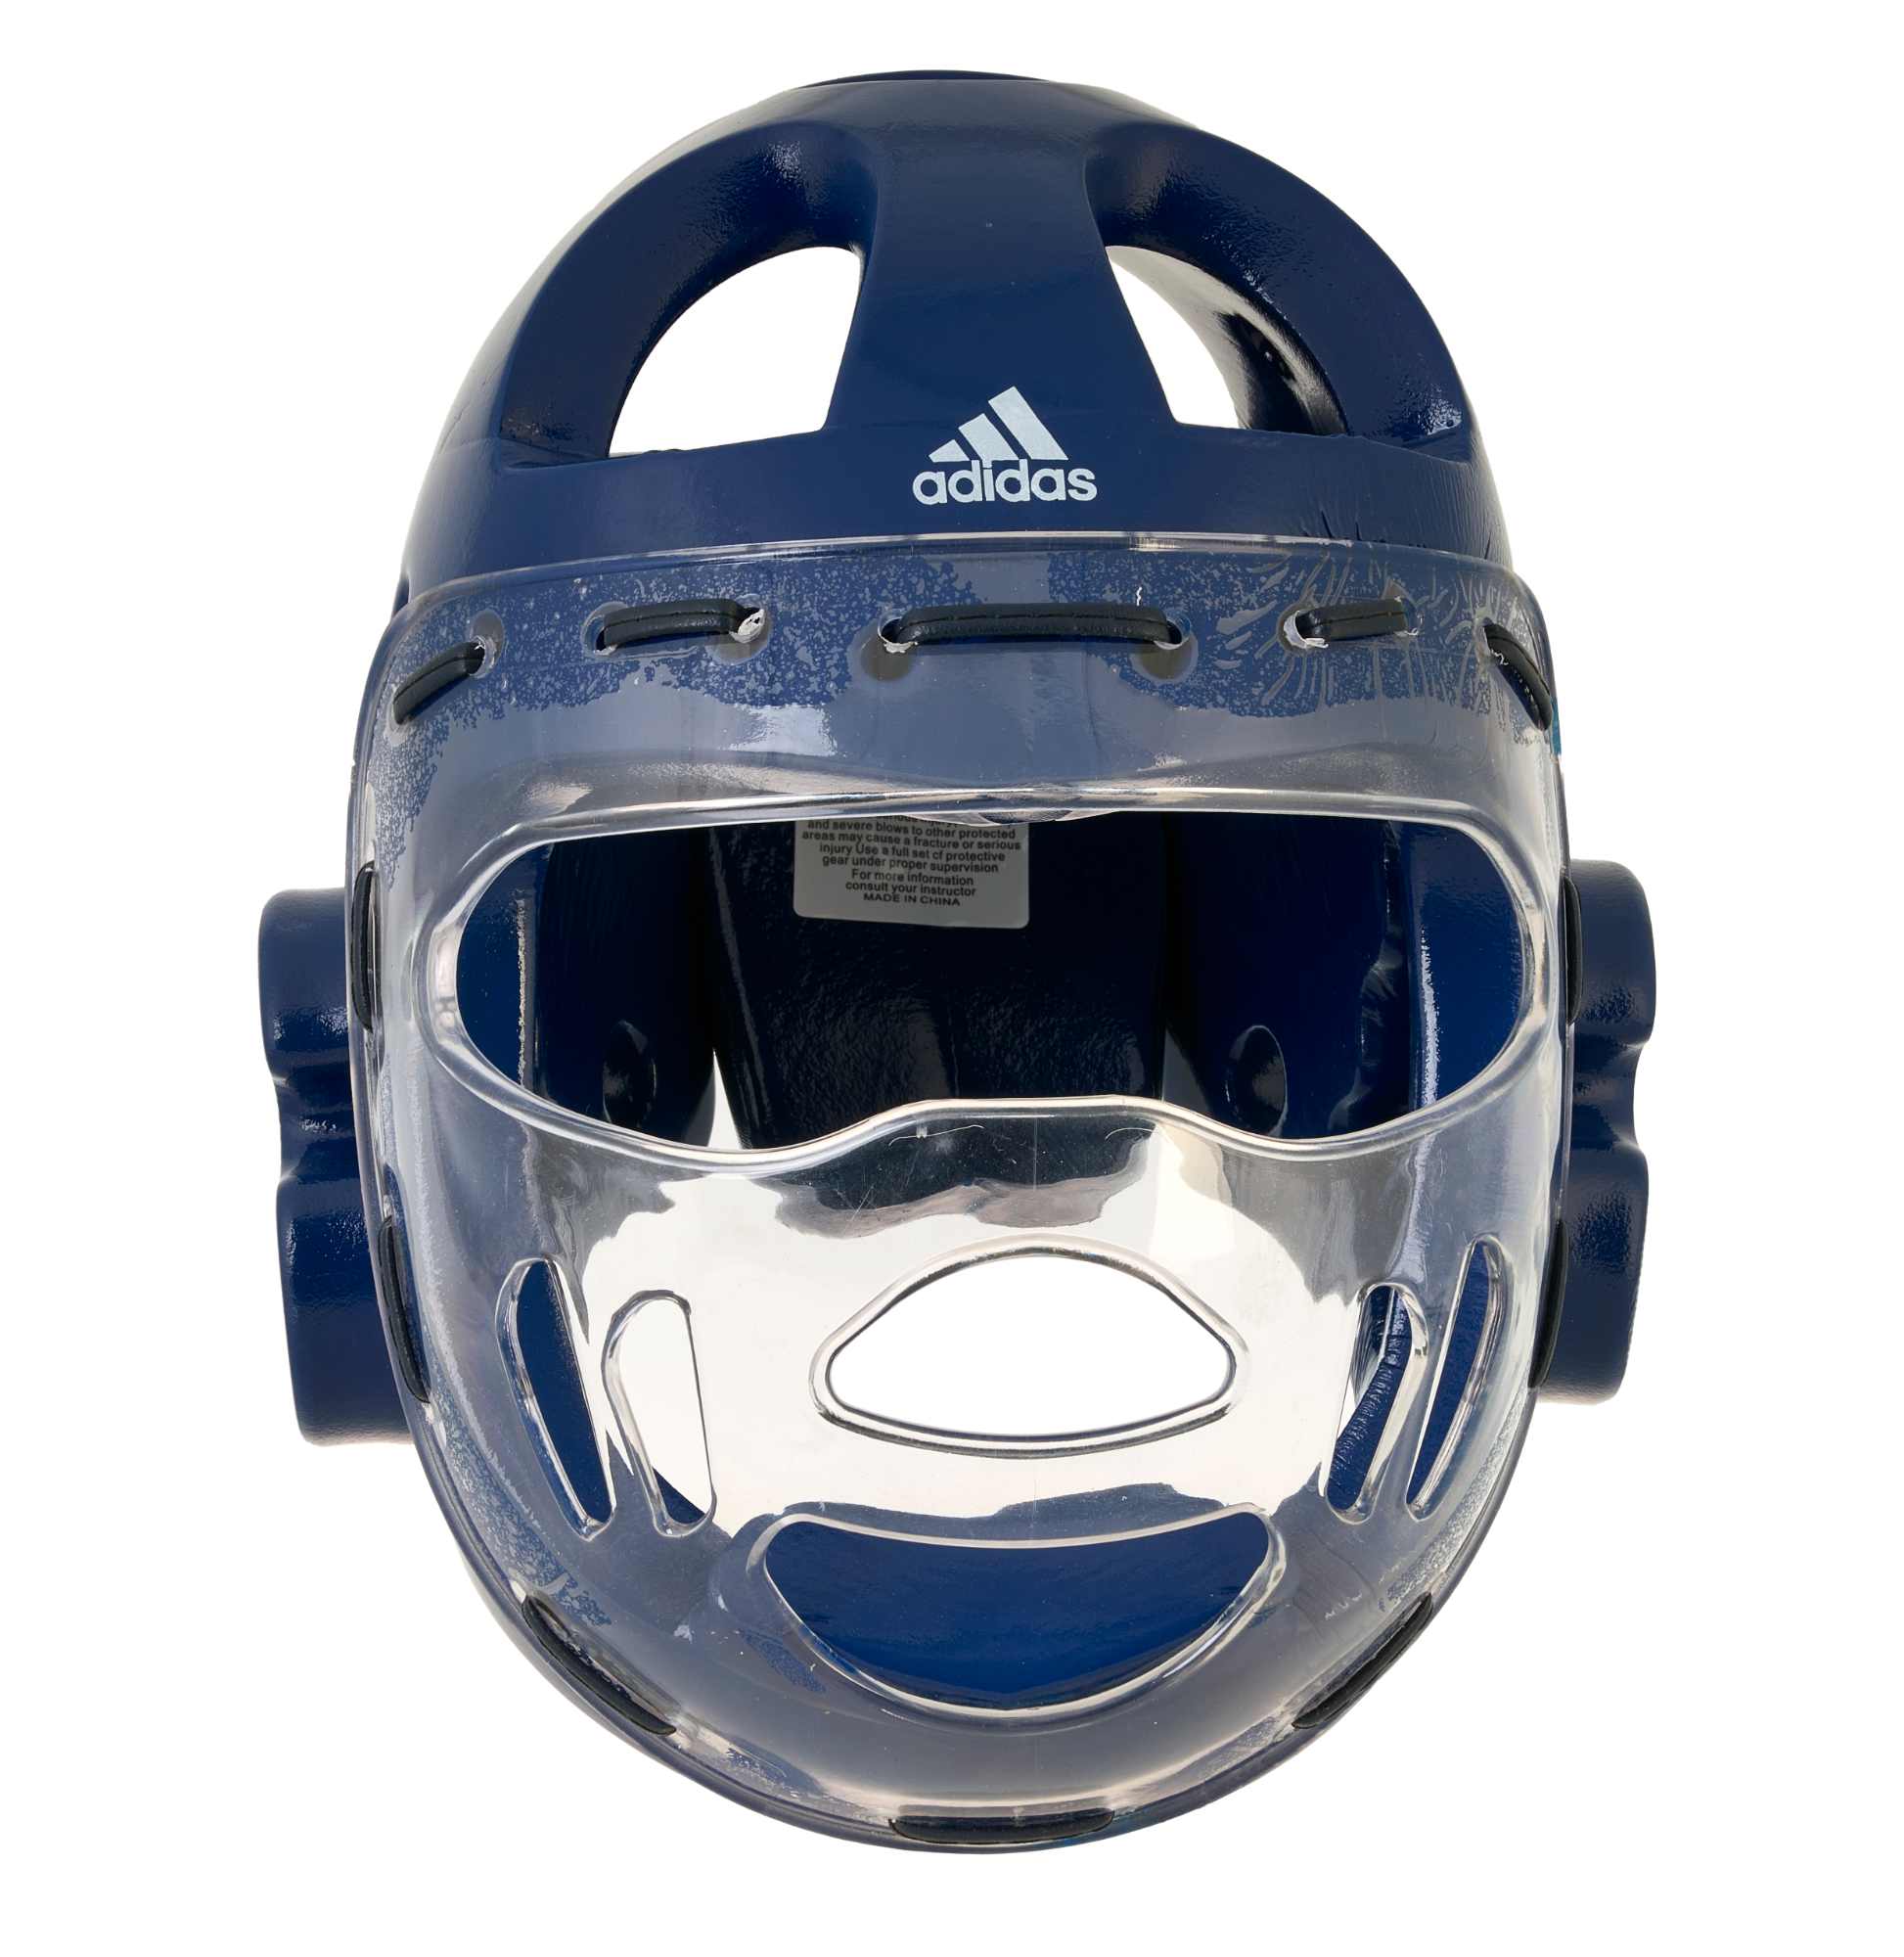 Adidas Kopfschutz Dip mit Maske in 3 Farben